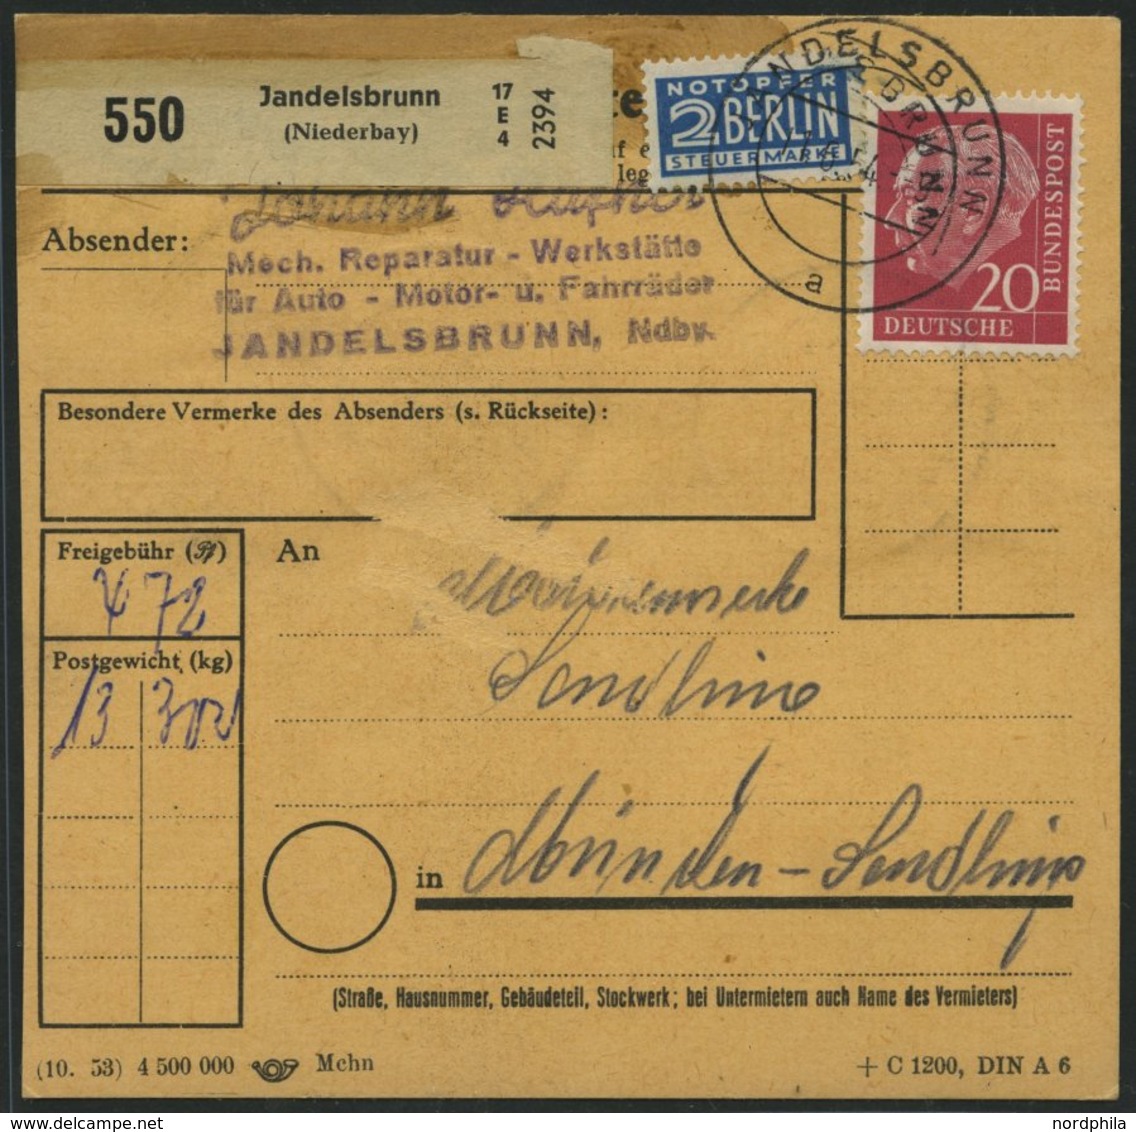 BUNDESREPUBLIK 138 BRIEF, 1954, 90 Pf. Posthorn Im Fünferblock Rückseitig Mit 20 Pf. Zusatzfrankatur Auf Paketkarte Aus  - Usati